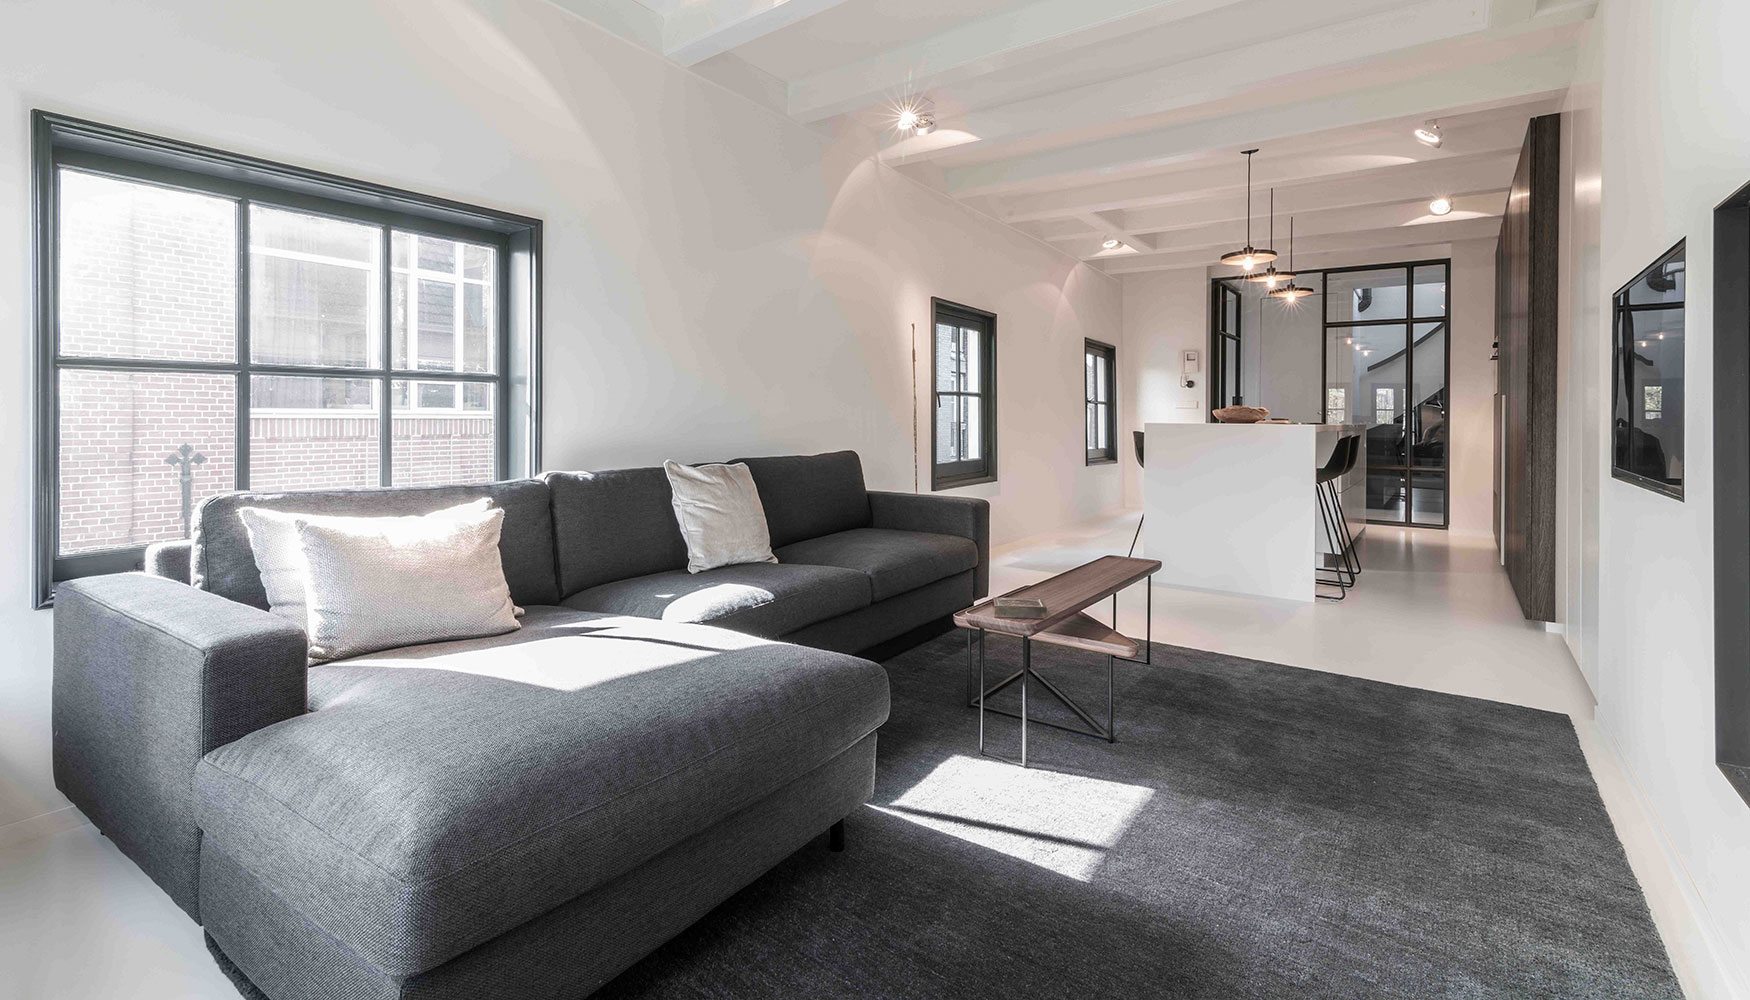 El apartamento transmite simplicidad y claridad desde la misma entrada